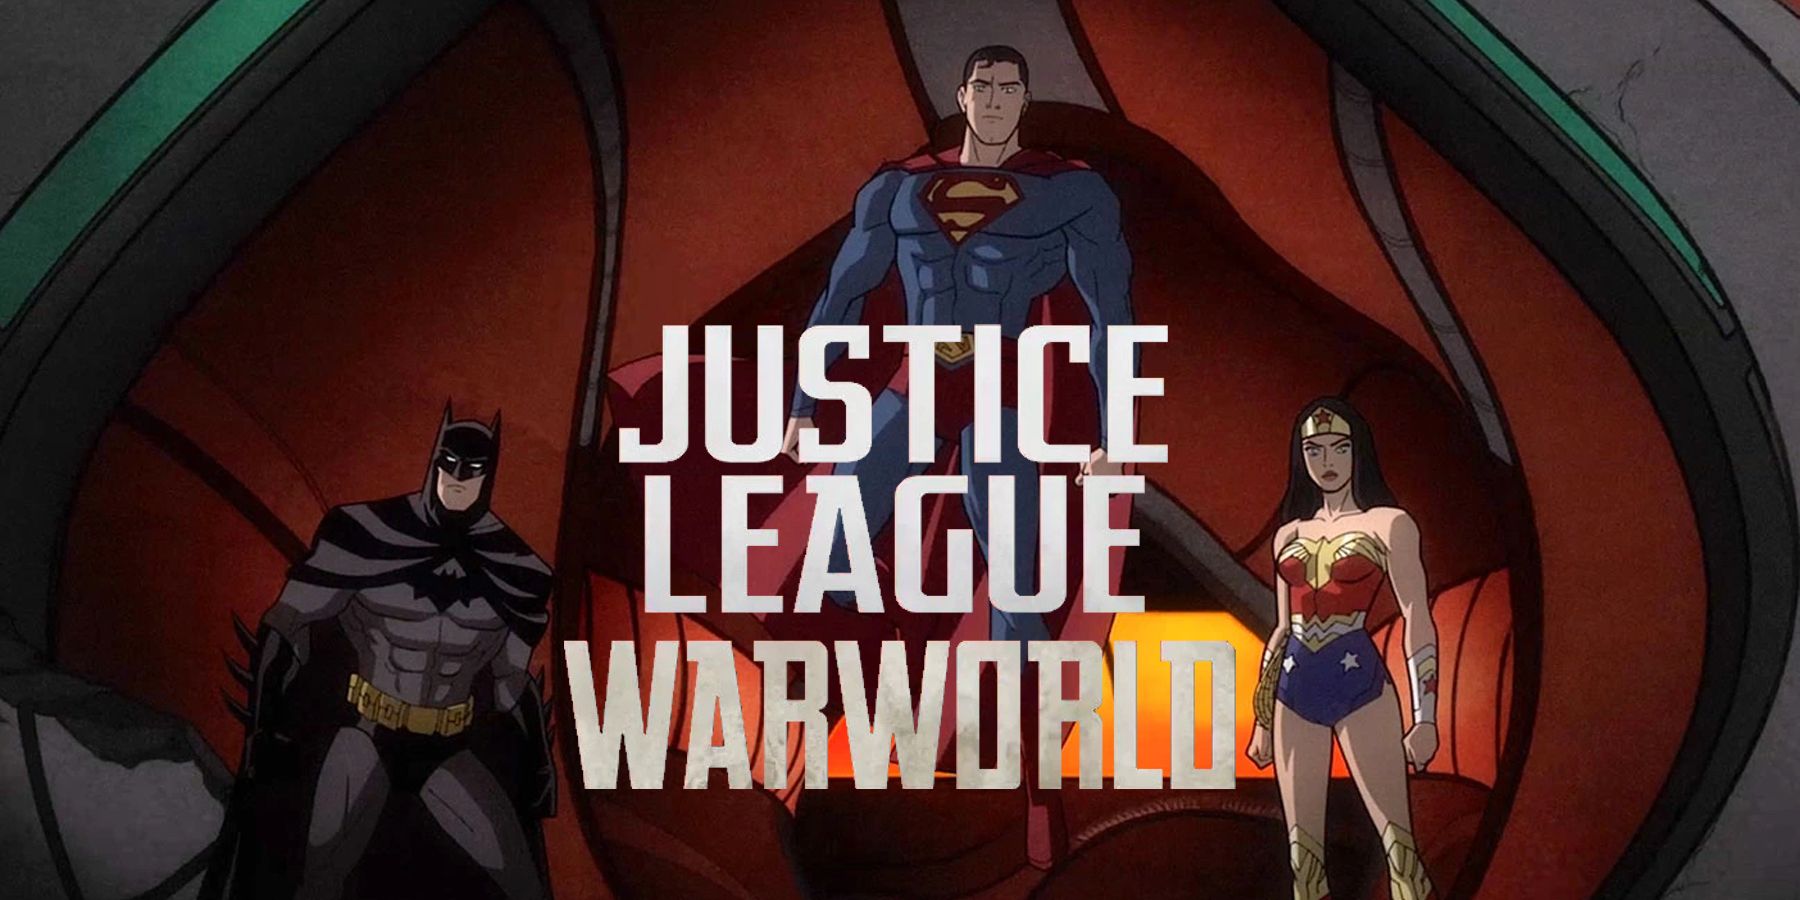 Justice League Warworld Voice Cast